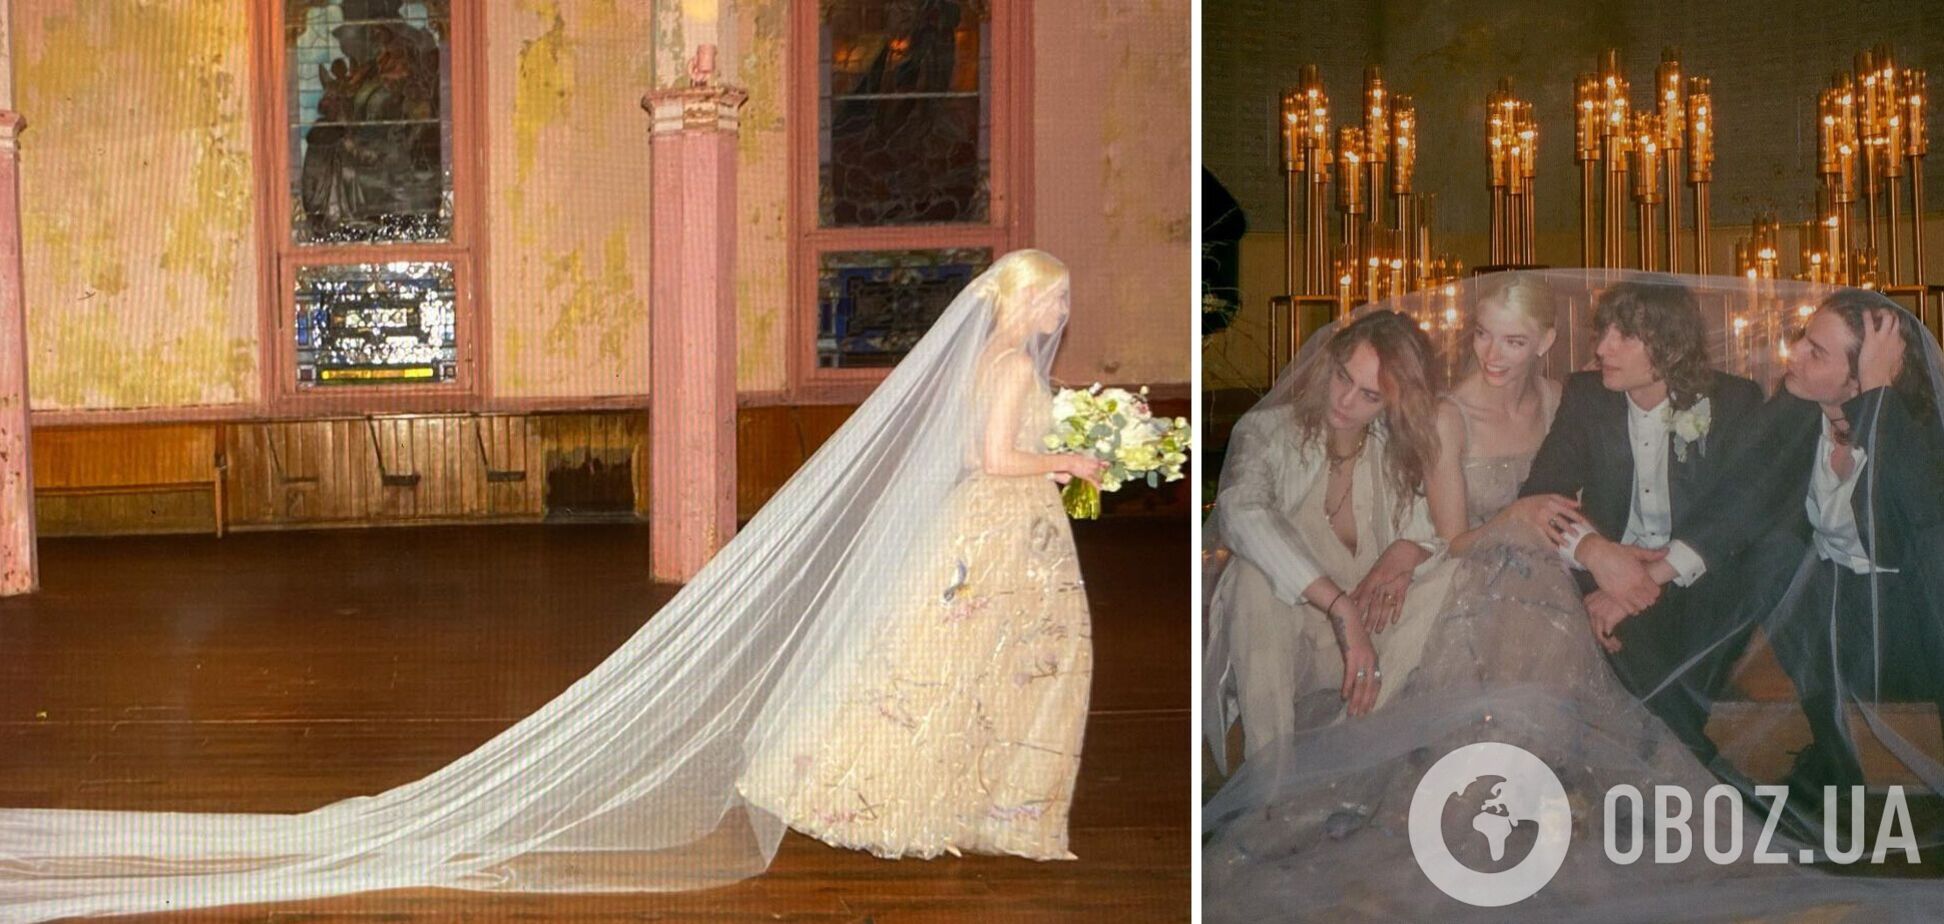 Аня Тейлор-Джой впервые показала фото со своей тайной свадьбы в 2022 году и засветила 'кровавый' торт в виде анатомических сердец